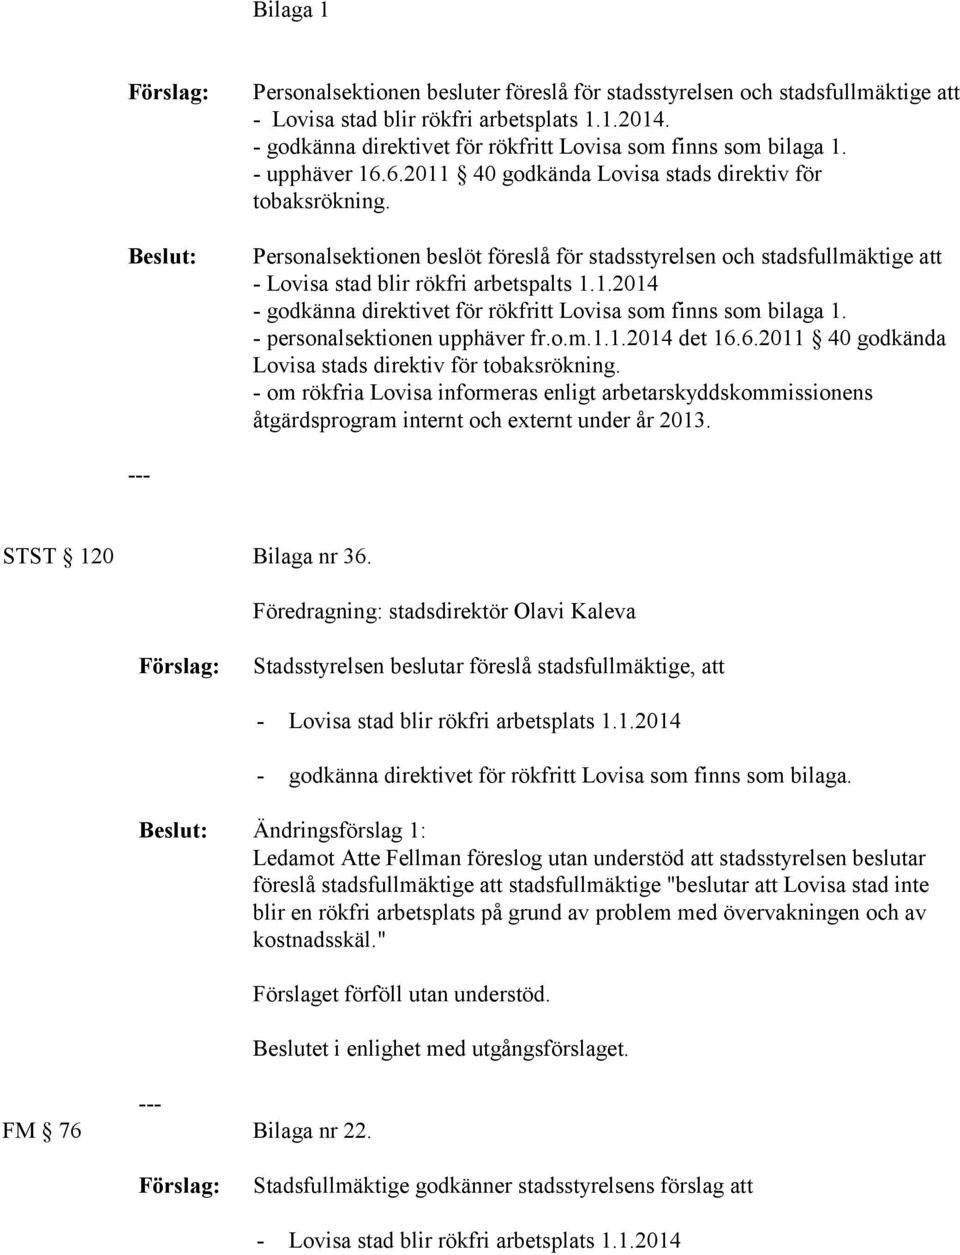 Personalsektionen beslöt föreslå för stadsstyrelsen och stadsfullmäktige att - Lovisa stad blir rökfri arbetspalts 1.1.2014 - godkänna direktivet för rökfritt Lovisa som finns som bilaga 1.